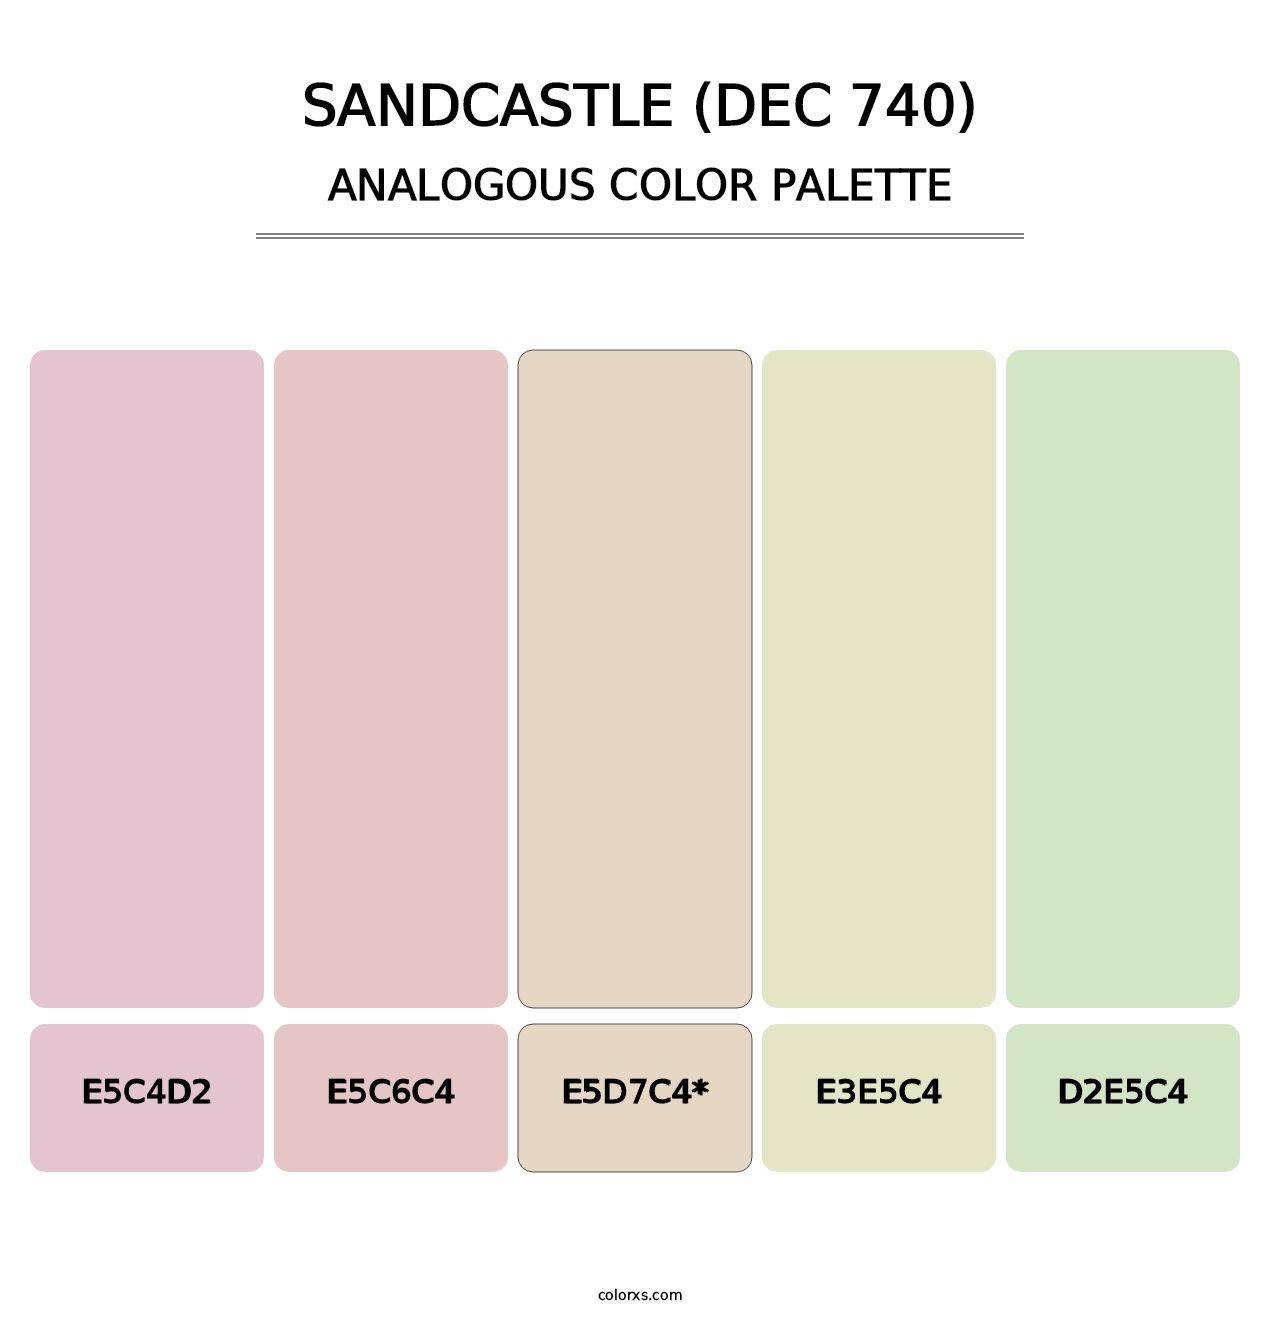 Sandcastle (DEC 740) - Analogous Color Palette